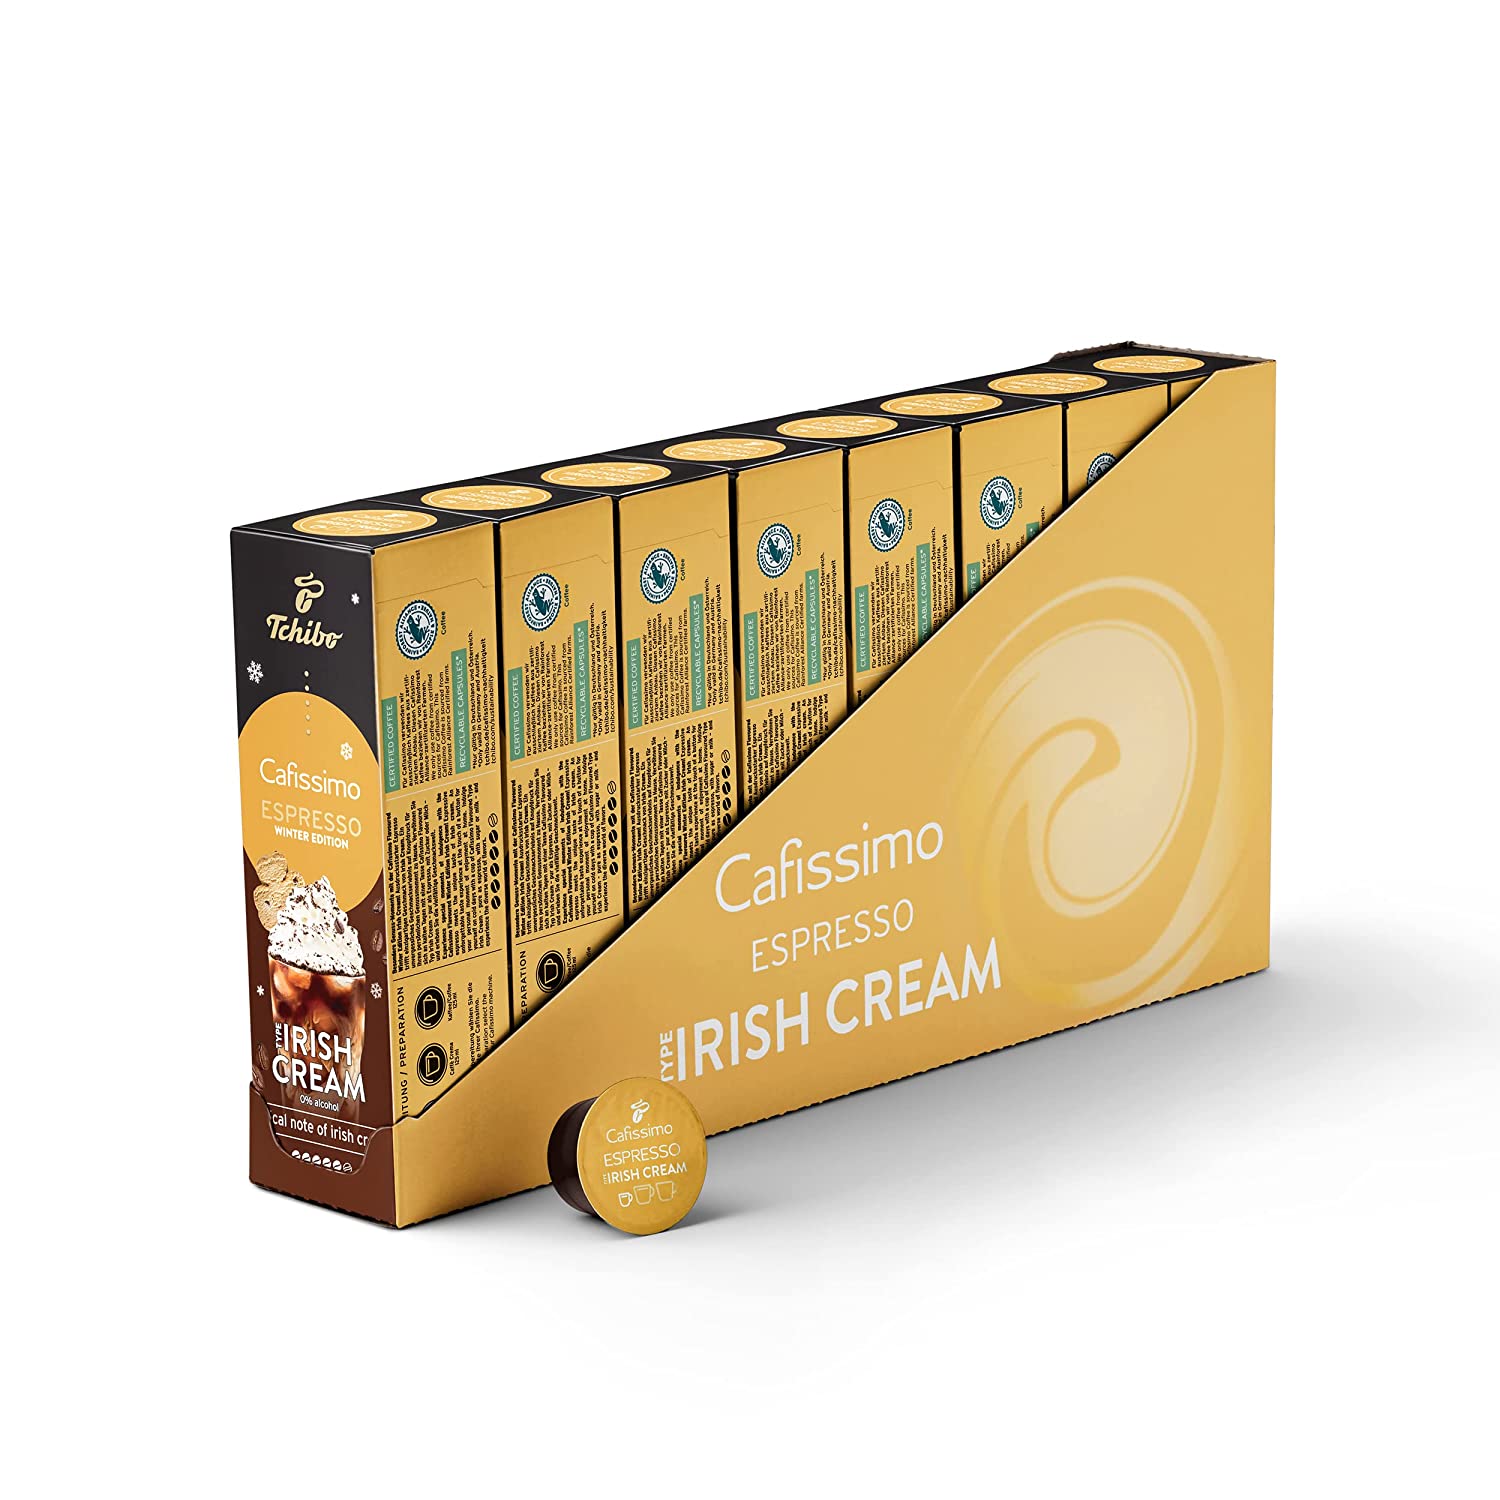 Tchibo Cafissimo Vorratsbox Flavoured Winter Edition Espresso Irish Cream, 80 Stück (8x10 Kapseln), nachhaltig & fair gehandelt, Premium Qualität